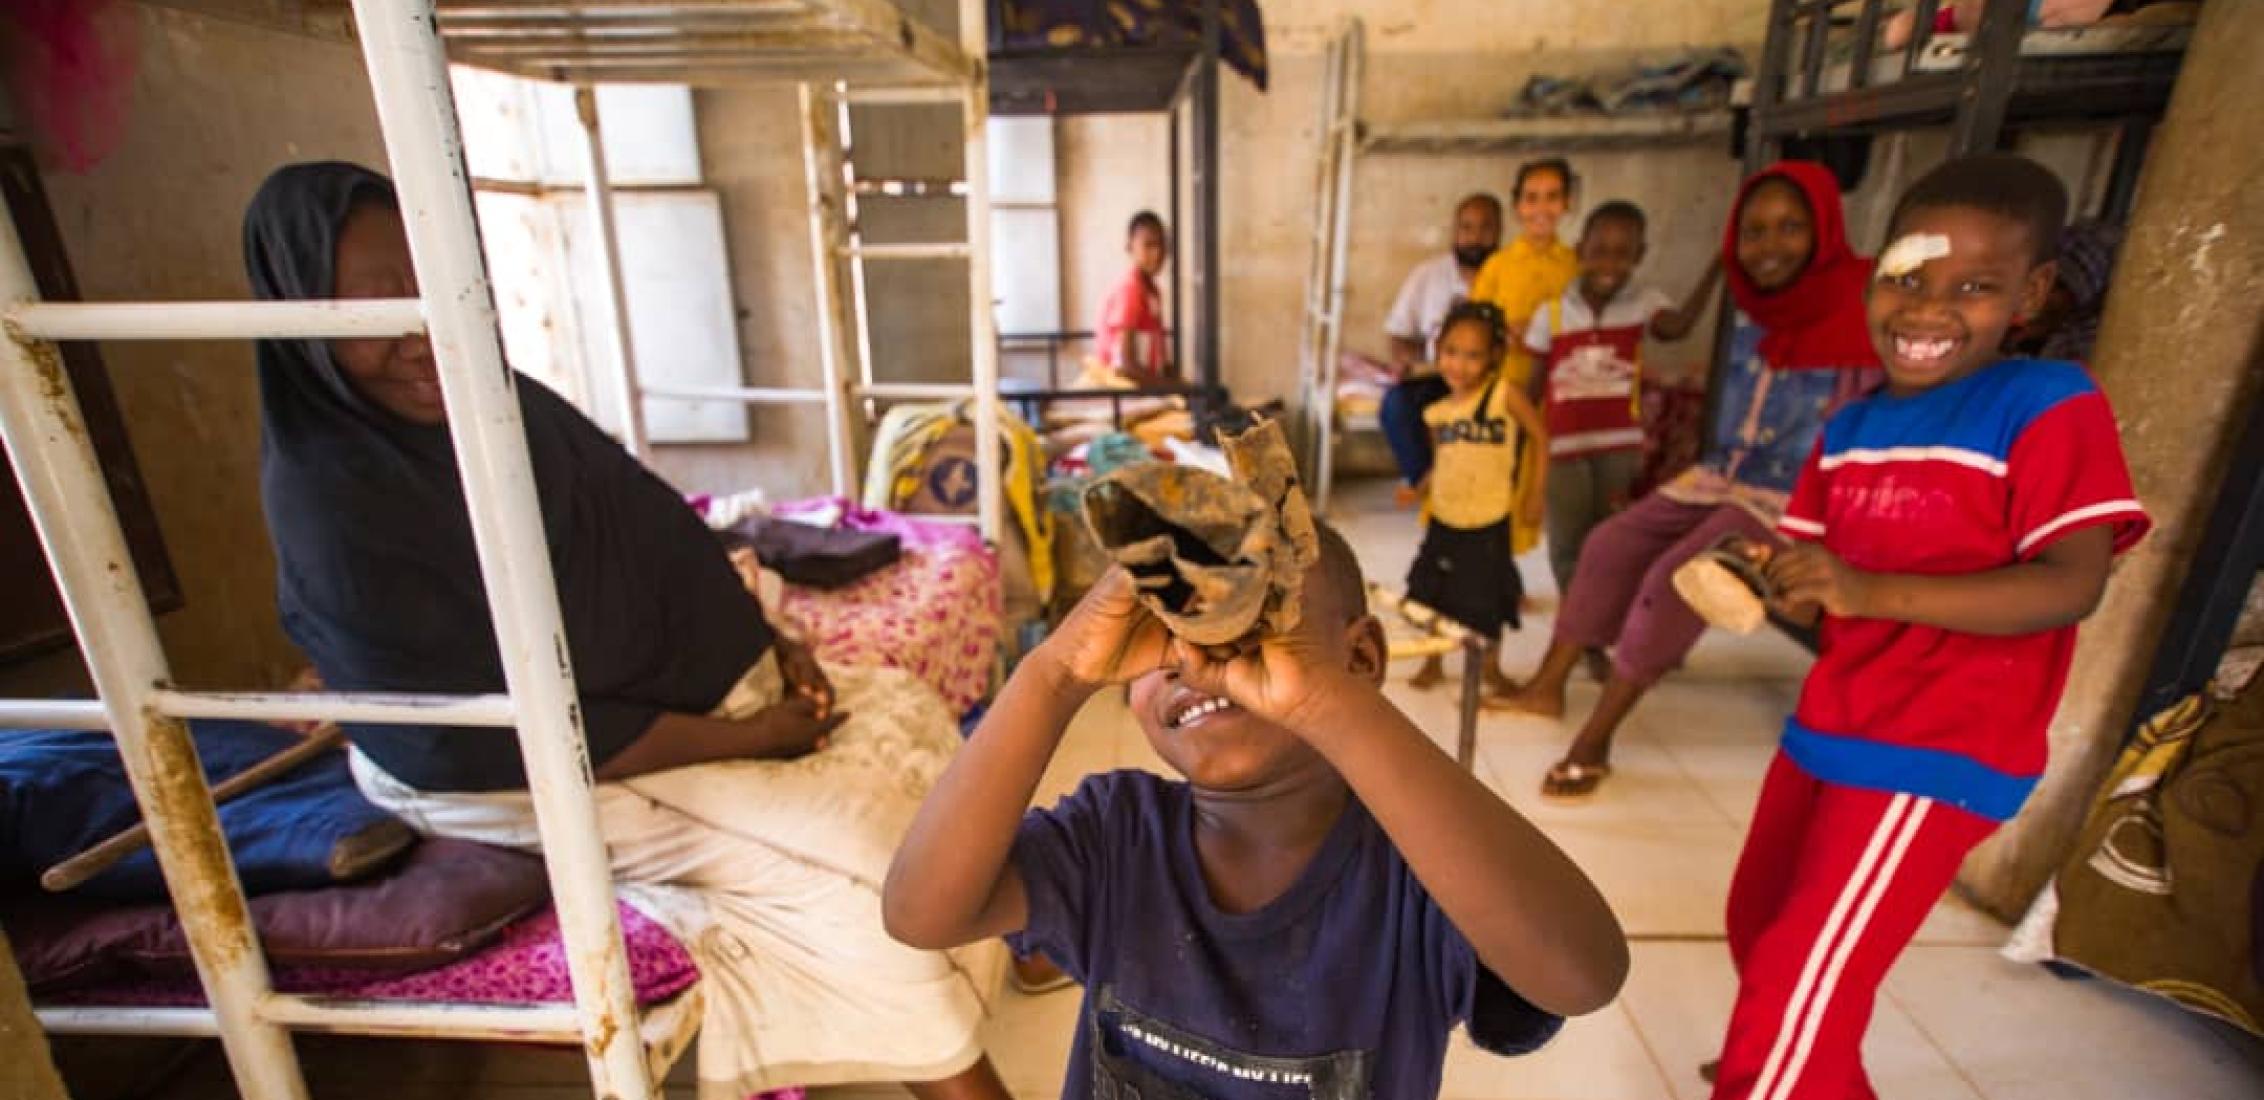 UN0844235/Mohamdeen Le 12 mai 2023, des enfants déplacés posent pour un portrait dans un abri temporaire. Suite à la poursuite des combats qui ont éclaté à Khartoum le 15 avril, les enfants et leurs familles ont fui et se sont mis en sécurité dans les États voisins plus sûrs.